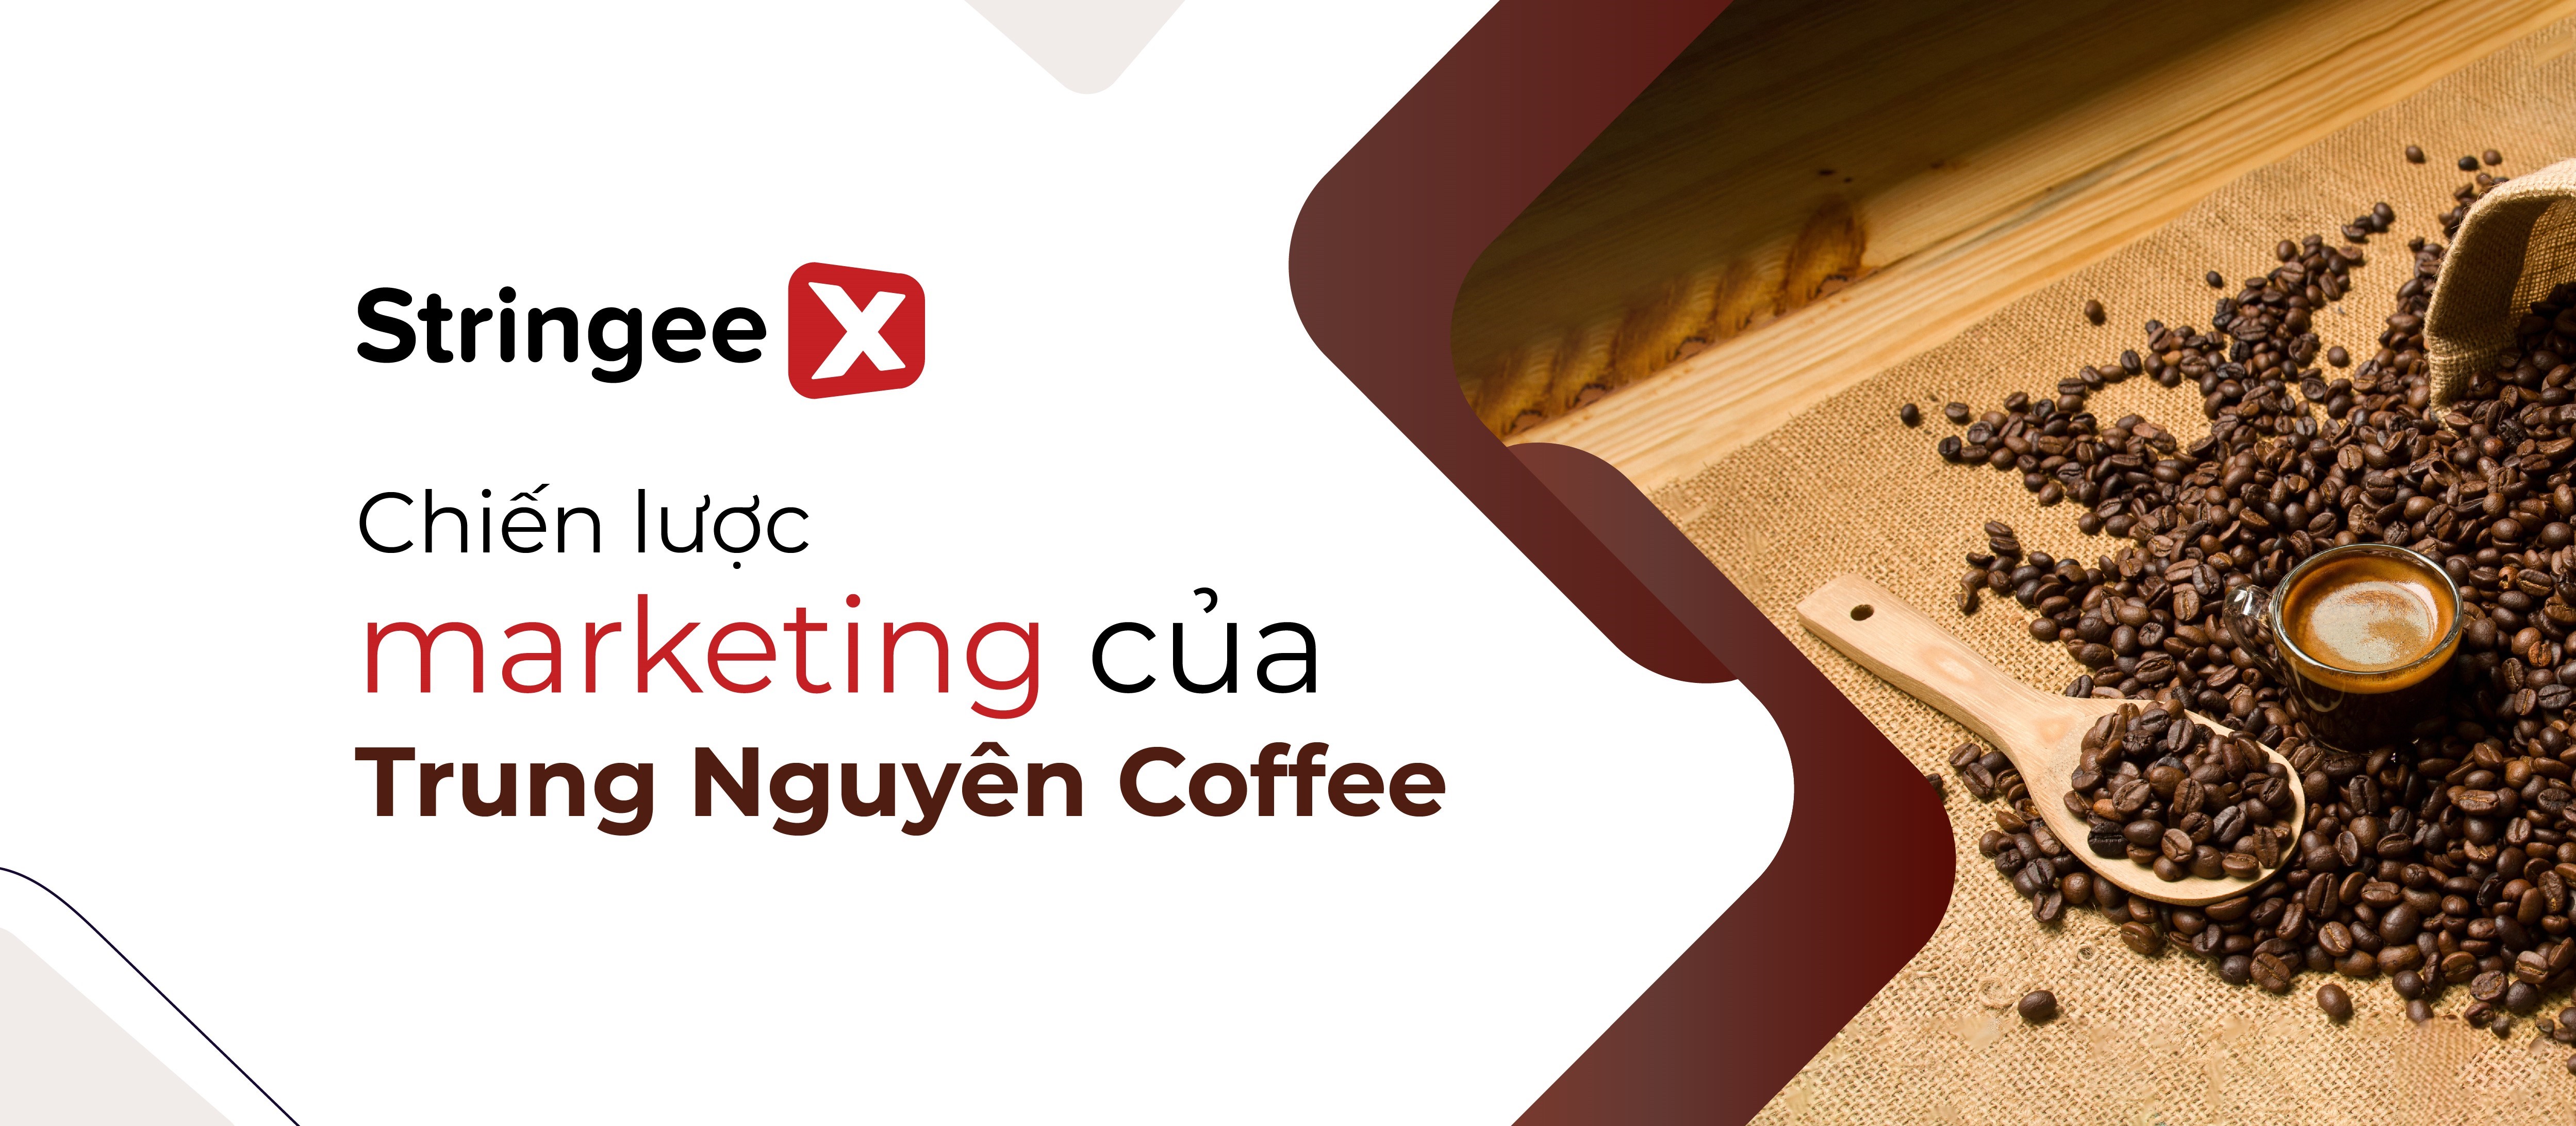 Chiến lược Marketing của Trung Nguyên Coffee - Thương hiệu cafe số 1 Việt Nam